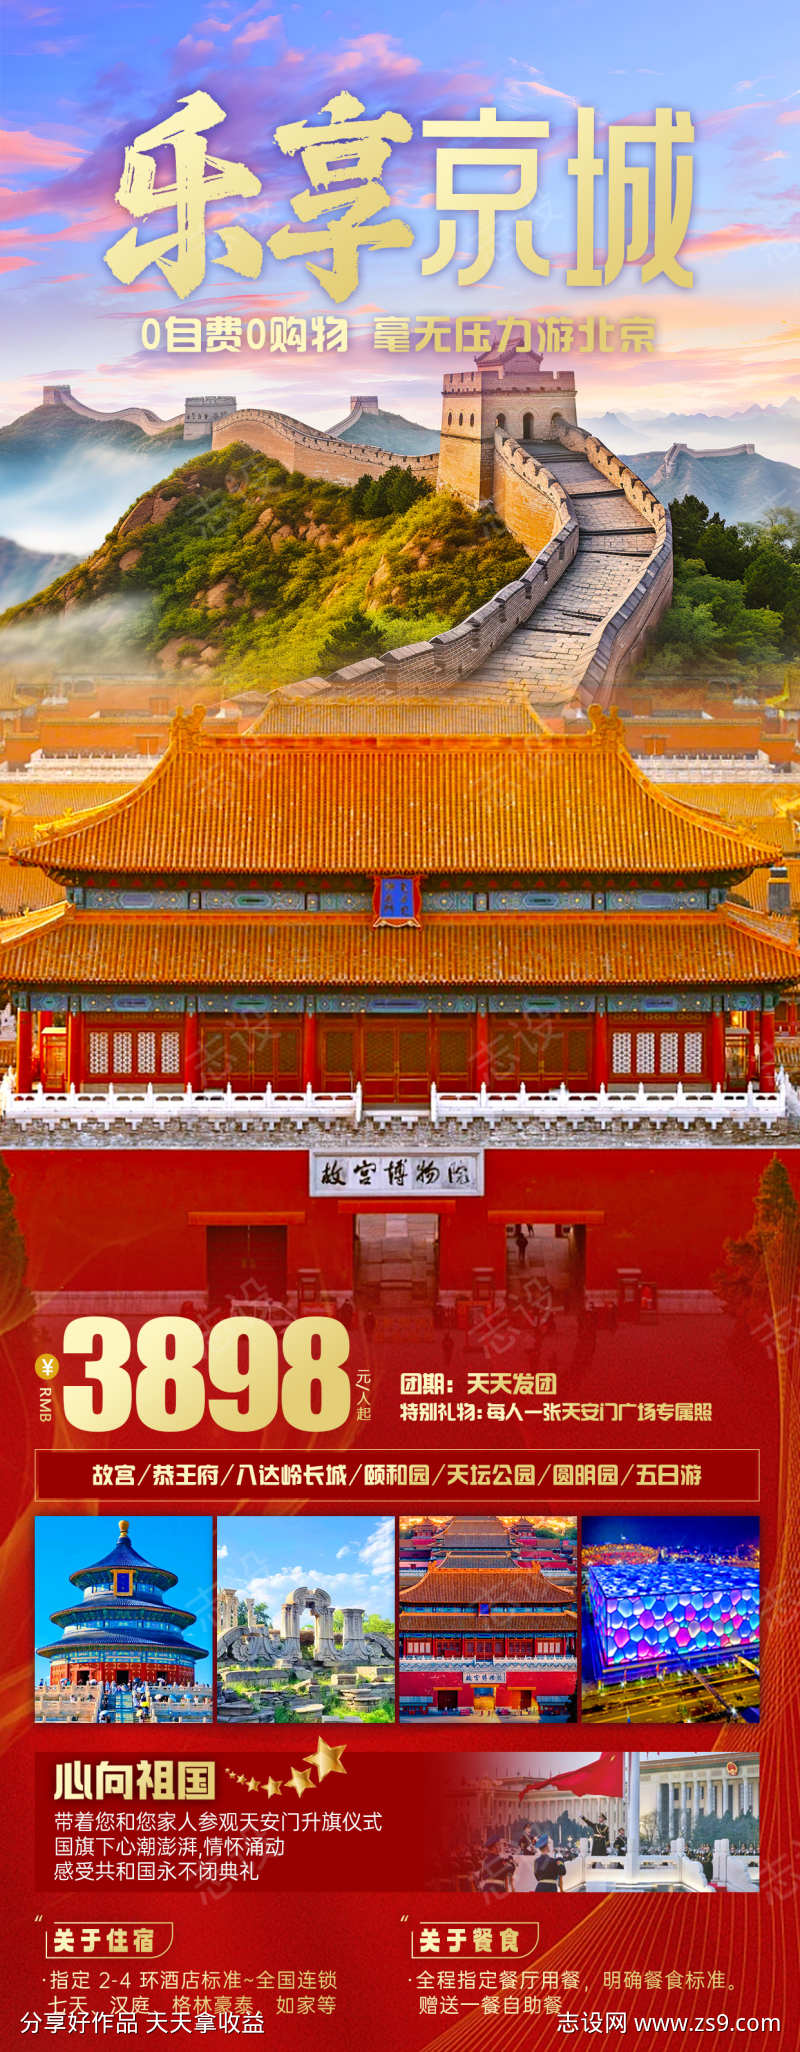 乐享京城旅游海报